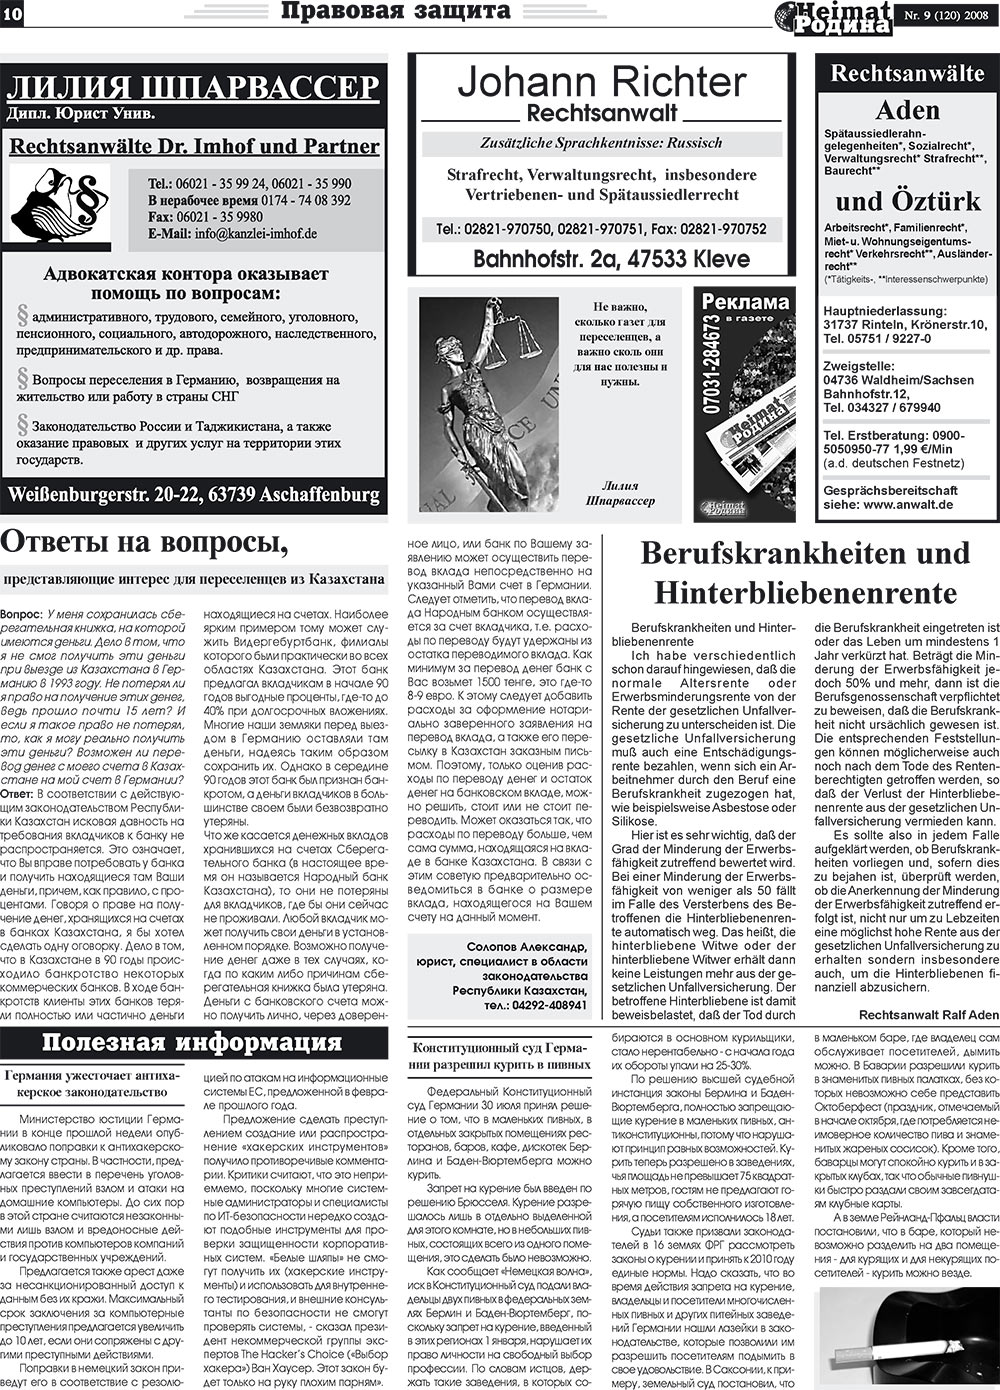 Heimat-Родина (газета). 2008 год, номер 9, стр. 10